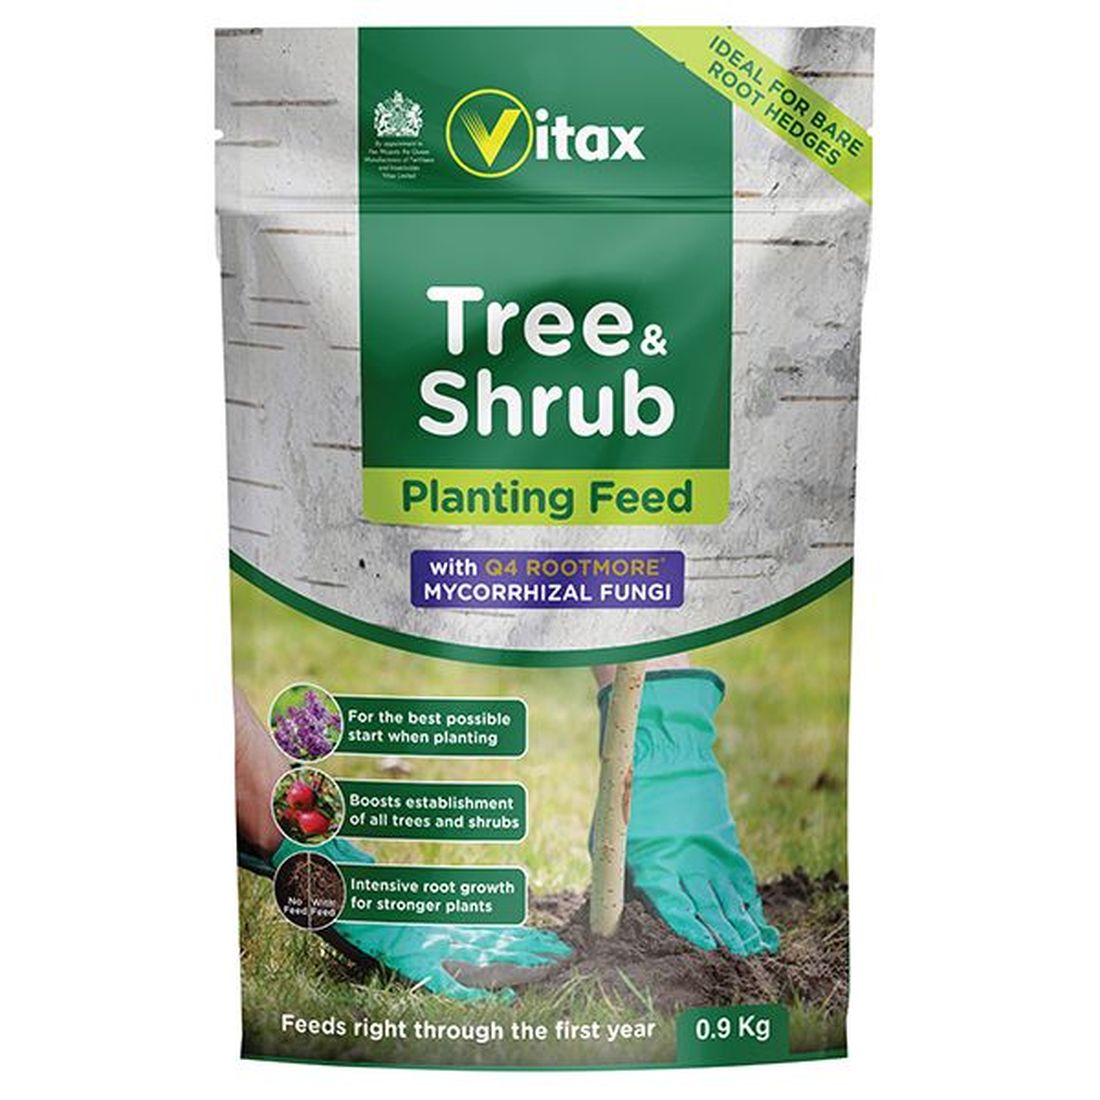 Vitax Tree & Shrub Planting Feed 0.9kg Pouch                                          